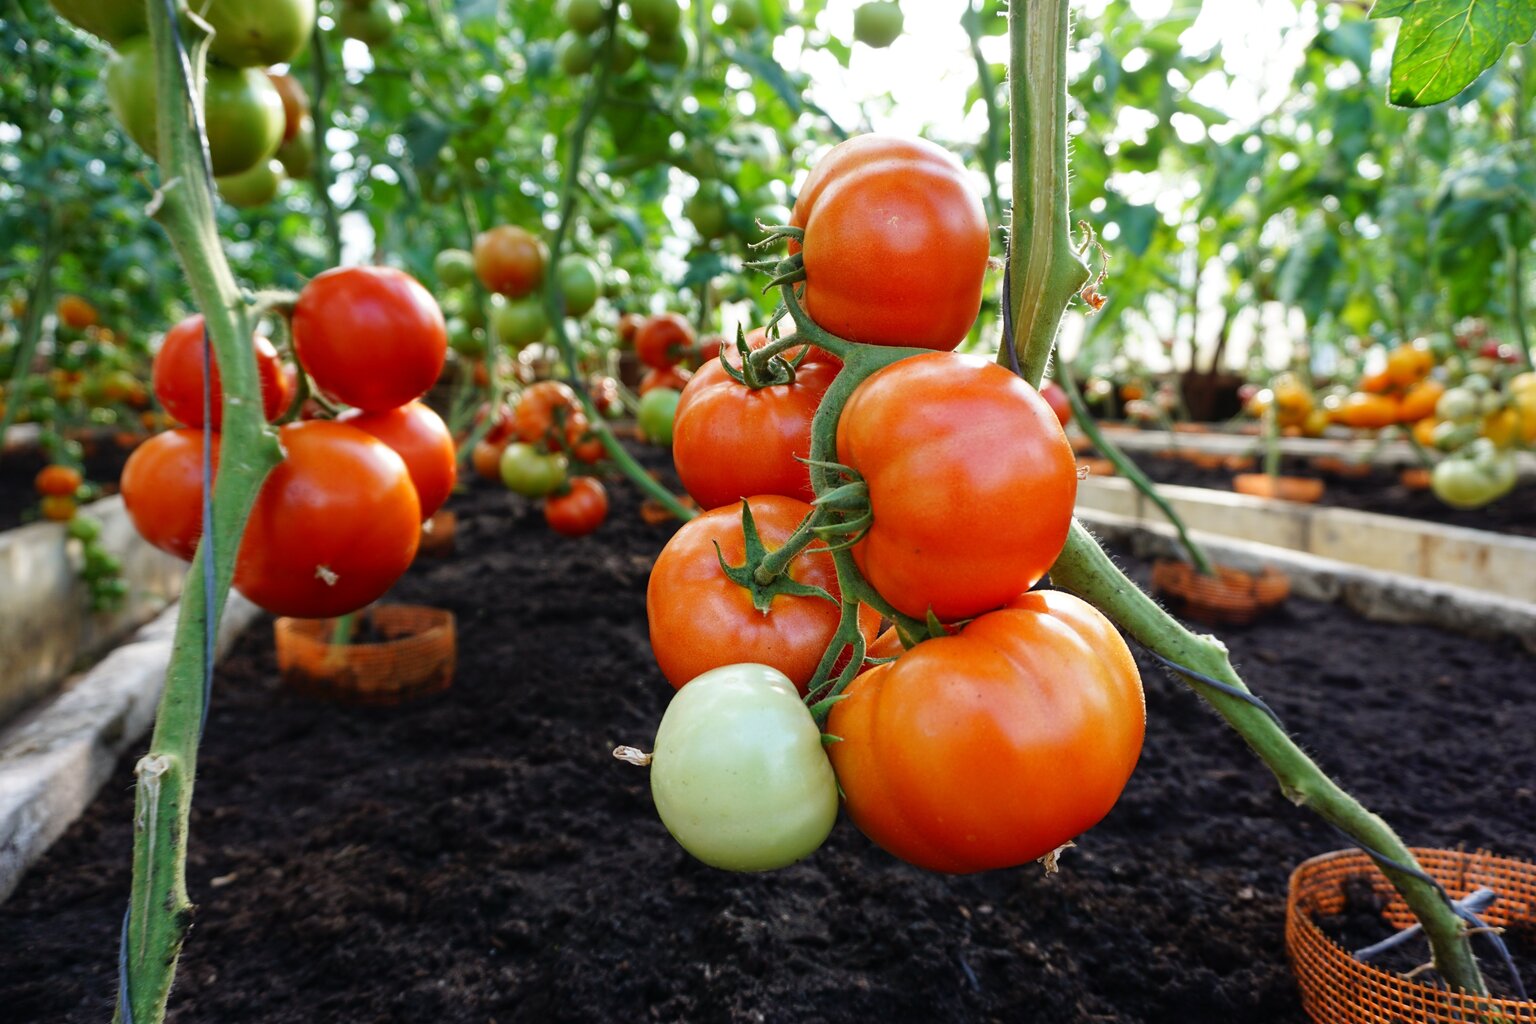 Söödavad tomatid Bellfort H hind ja info | Köögivilja-, marjaseemned | kaup24.ee